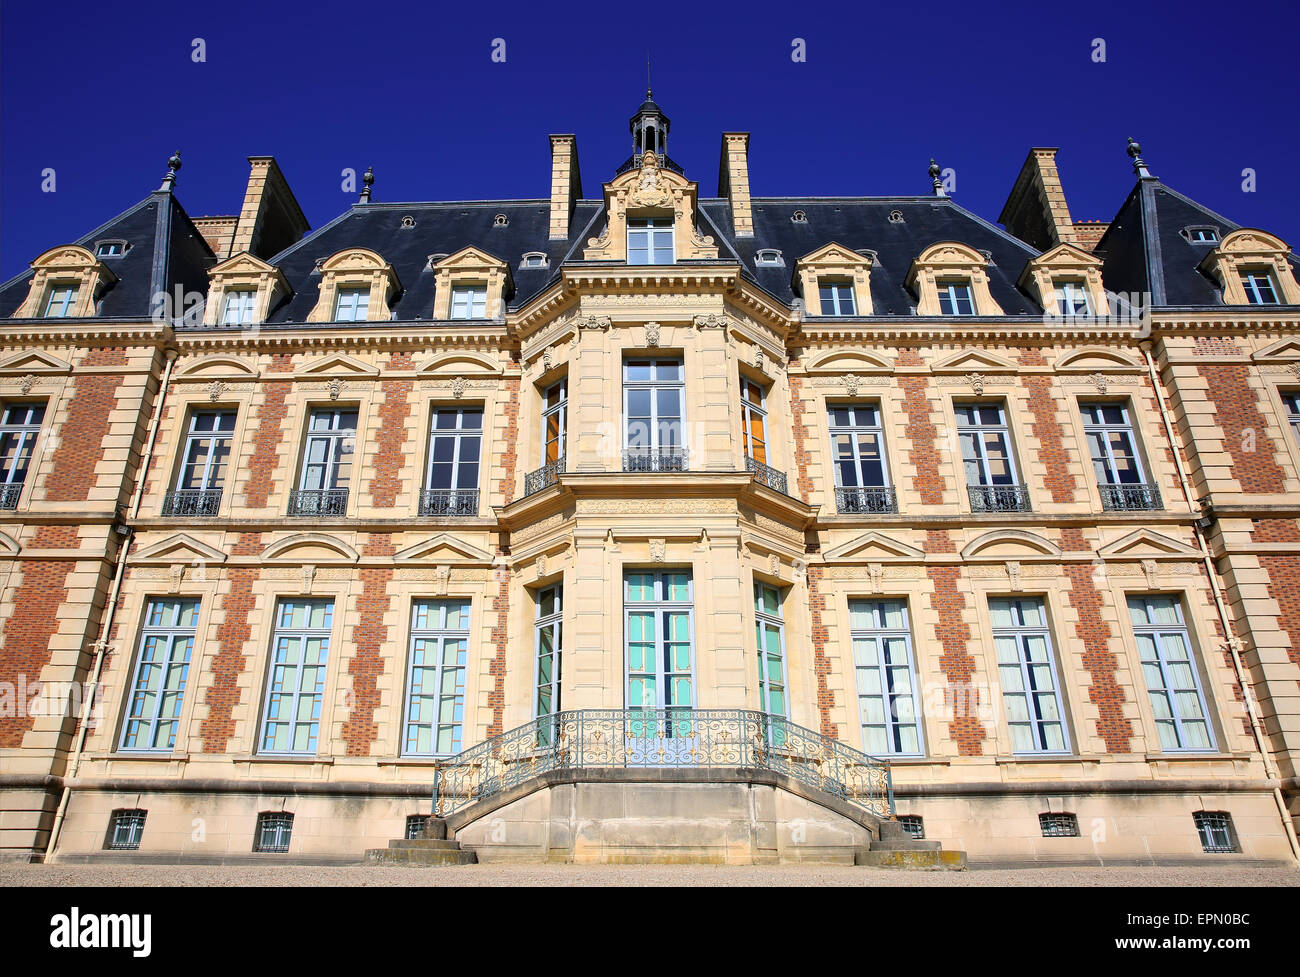 Chateau de Sceaux, grand country house in park of Sceaux, Hauts-de-Seine, not far from Paris, France. Stock Photo